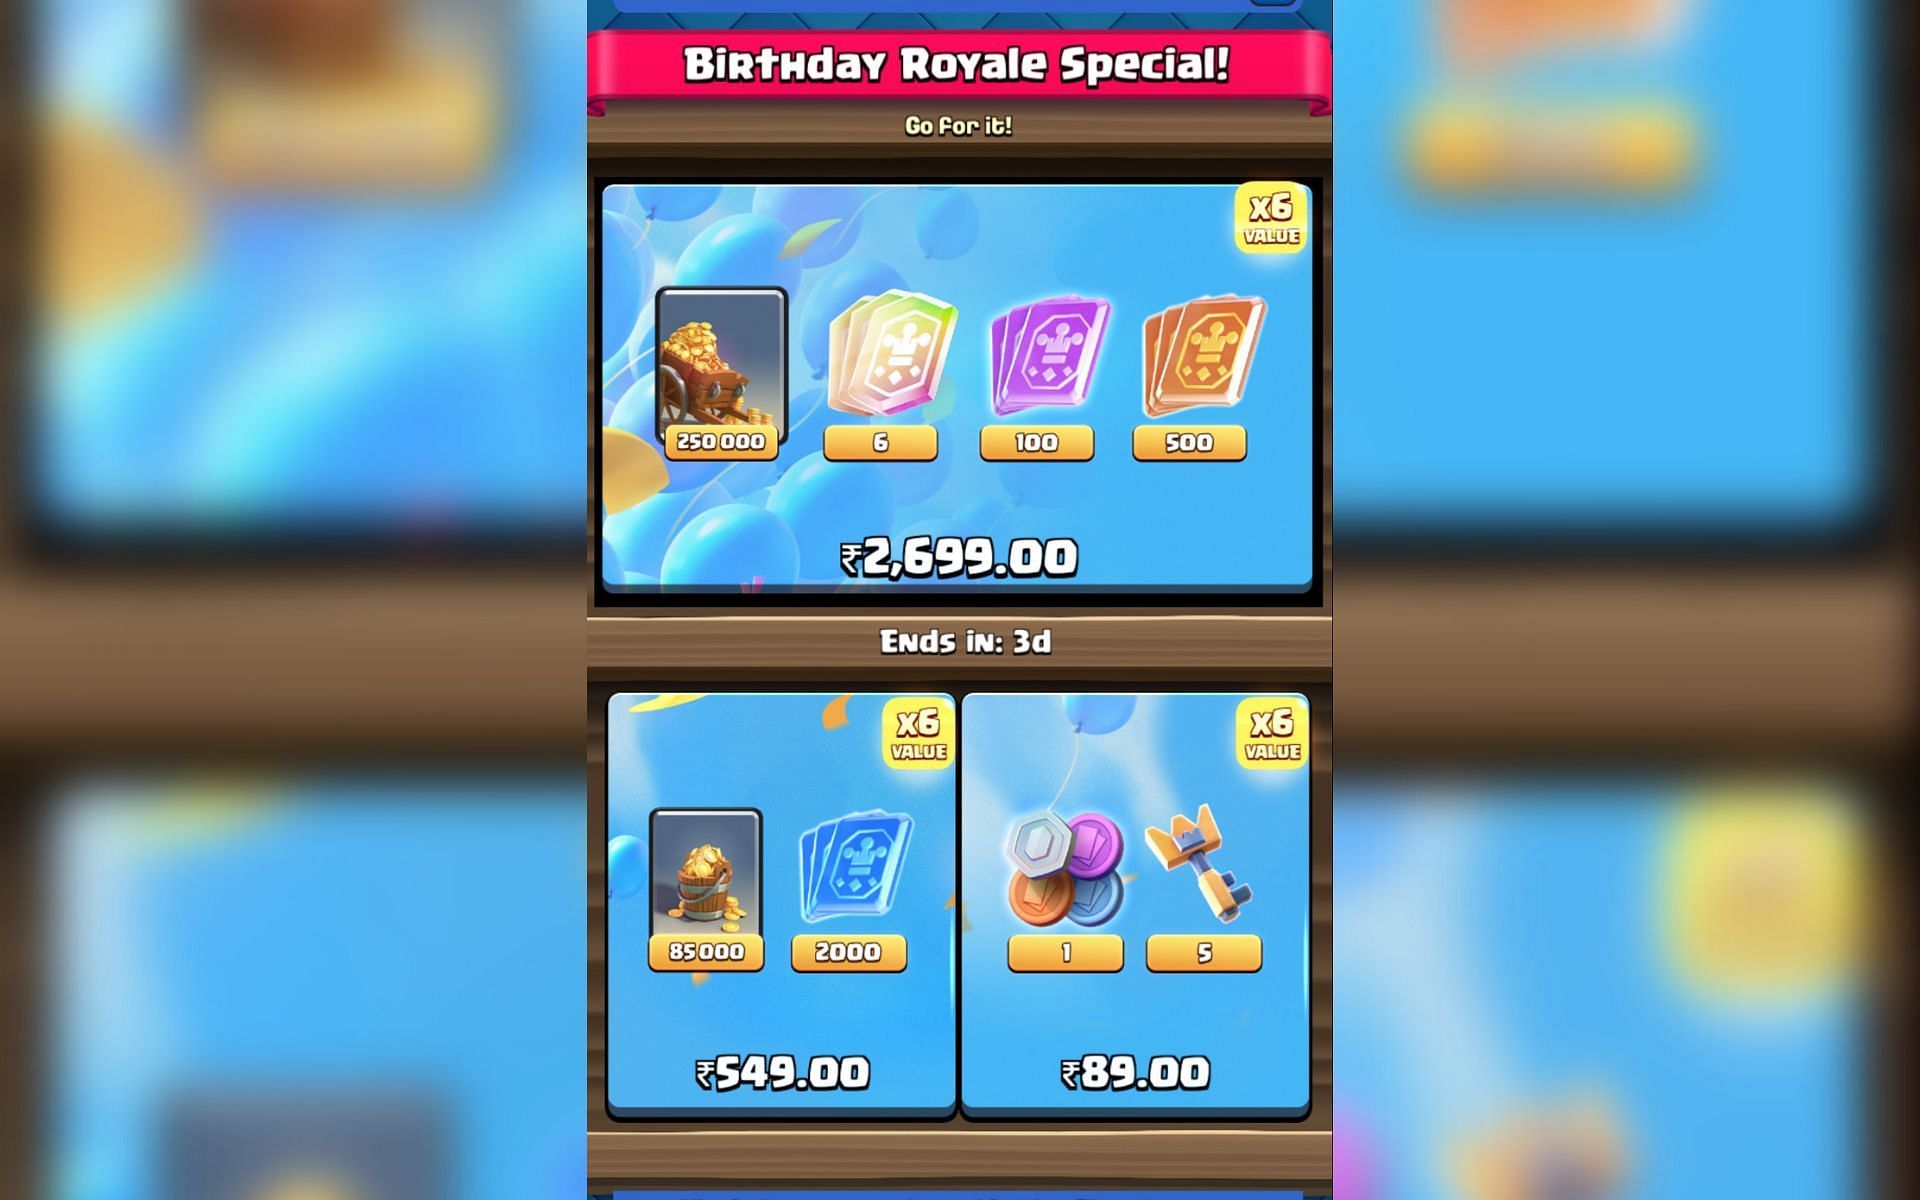 The birthday royale special offers (Image via Sportskeeda)